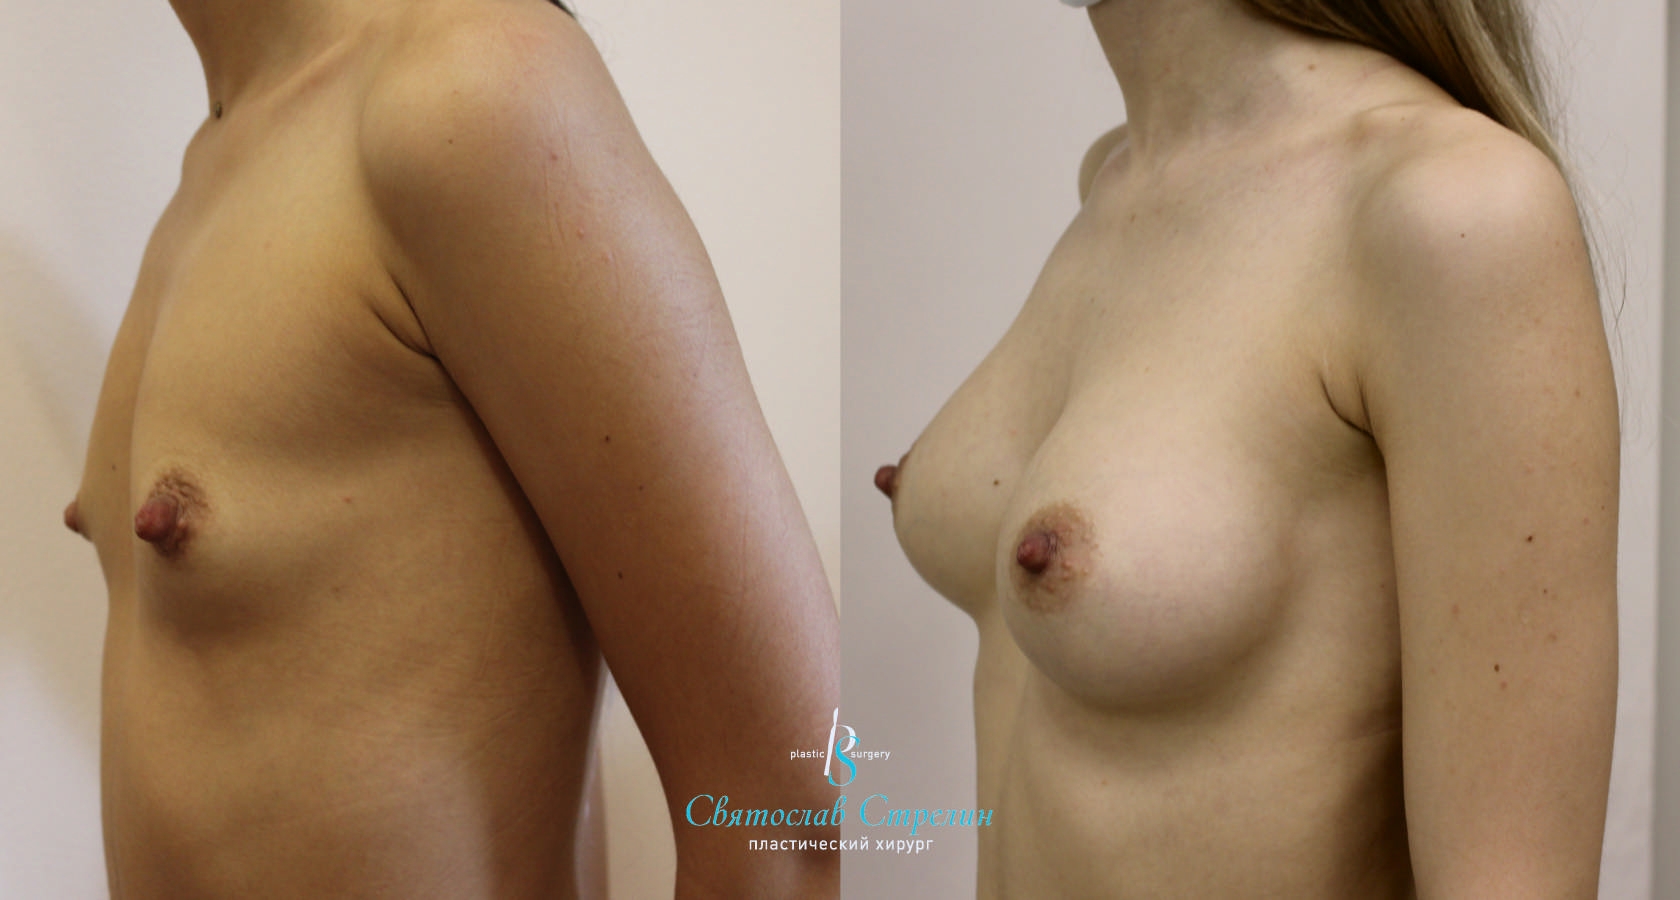 Увеличение груди, 2 года после операции, импланты Себбин 280 мл, анатомические, средняяв ысота, высокая проекция, доступ подмышечный